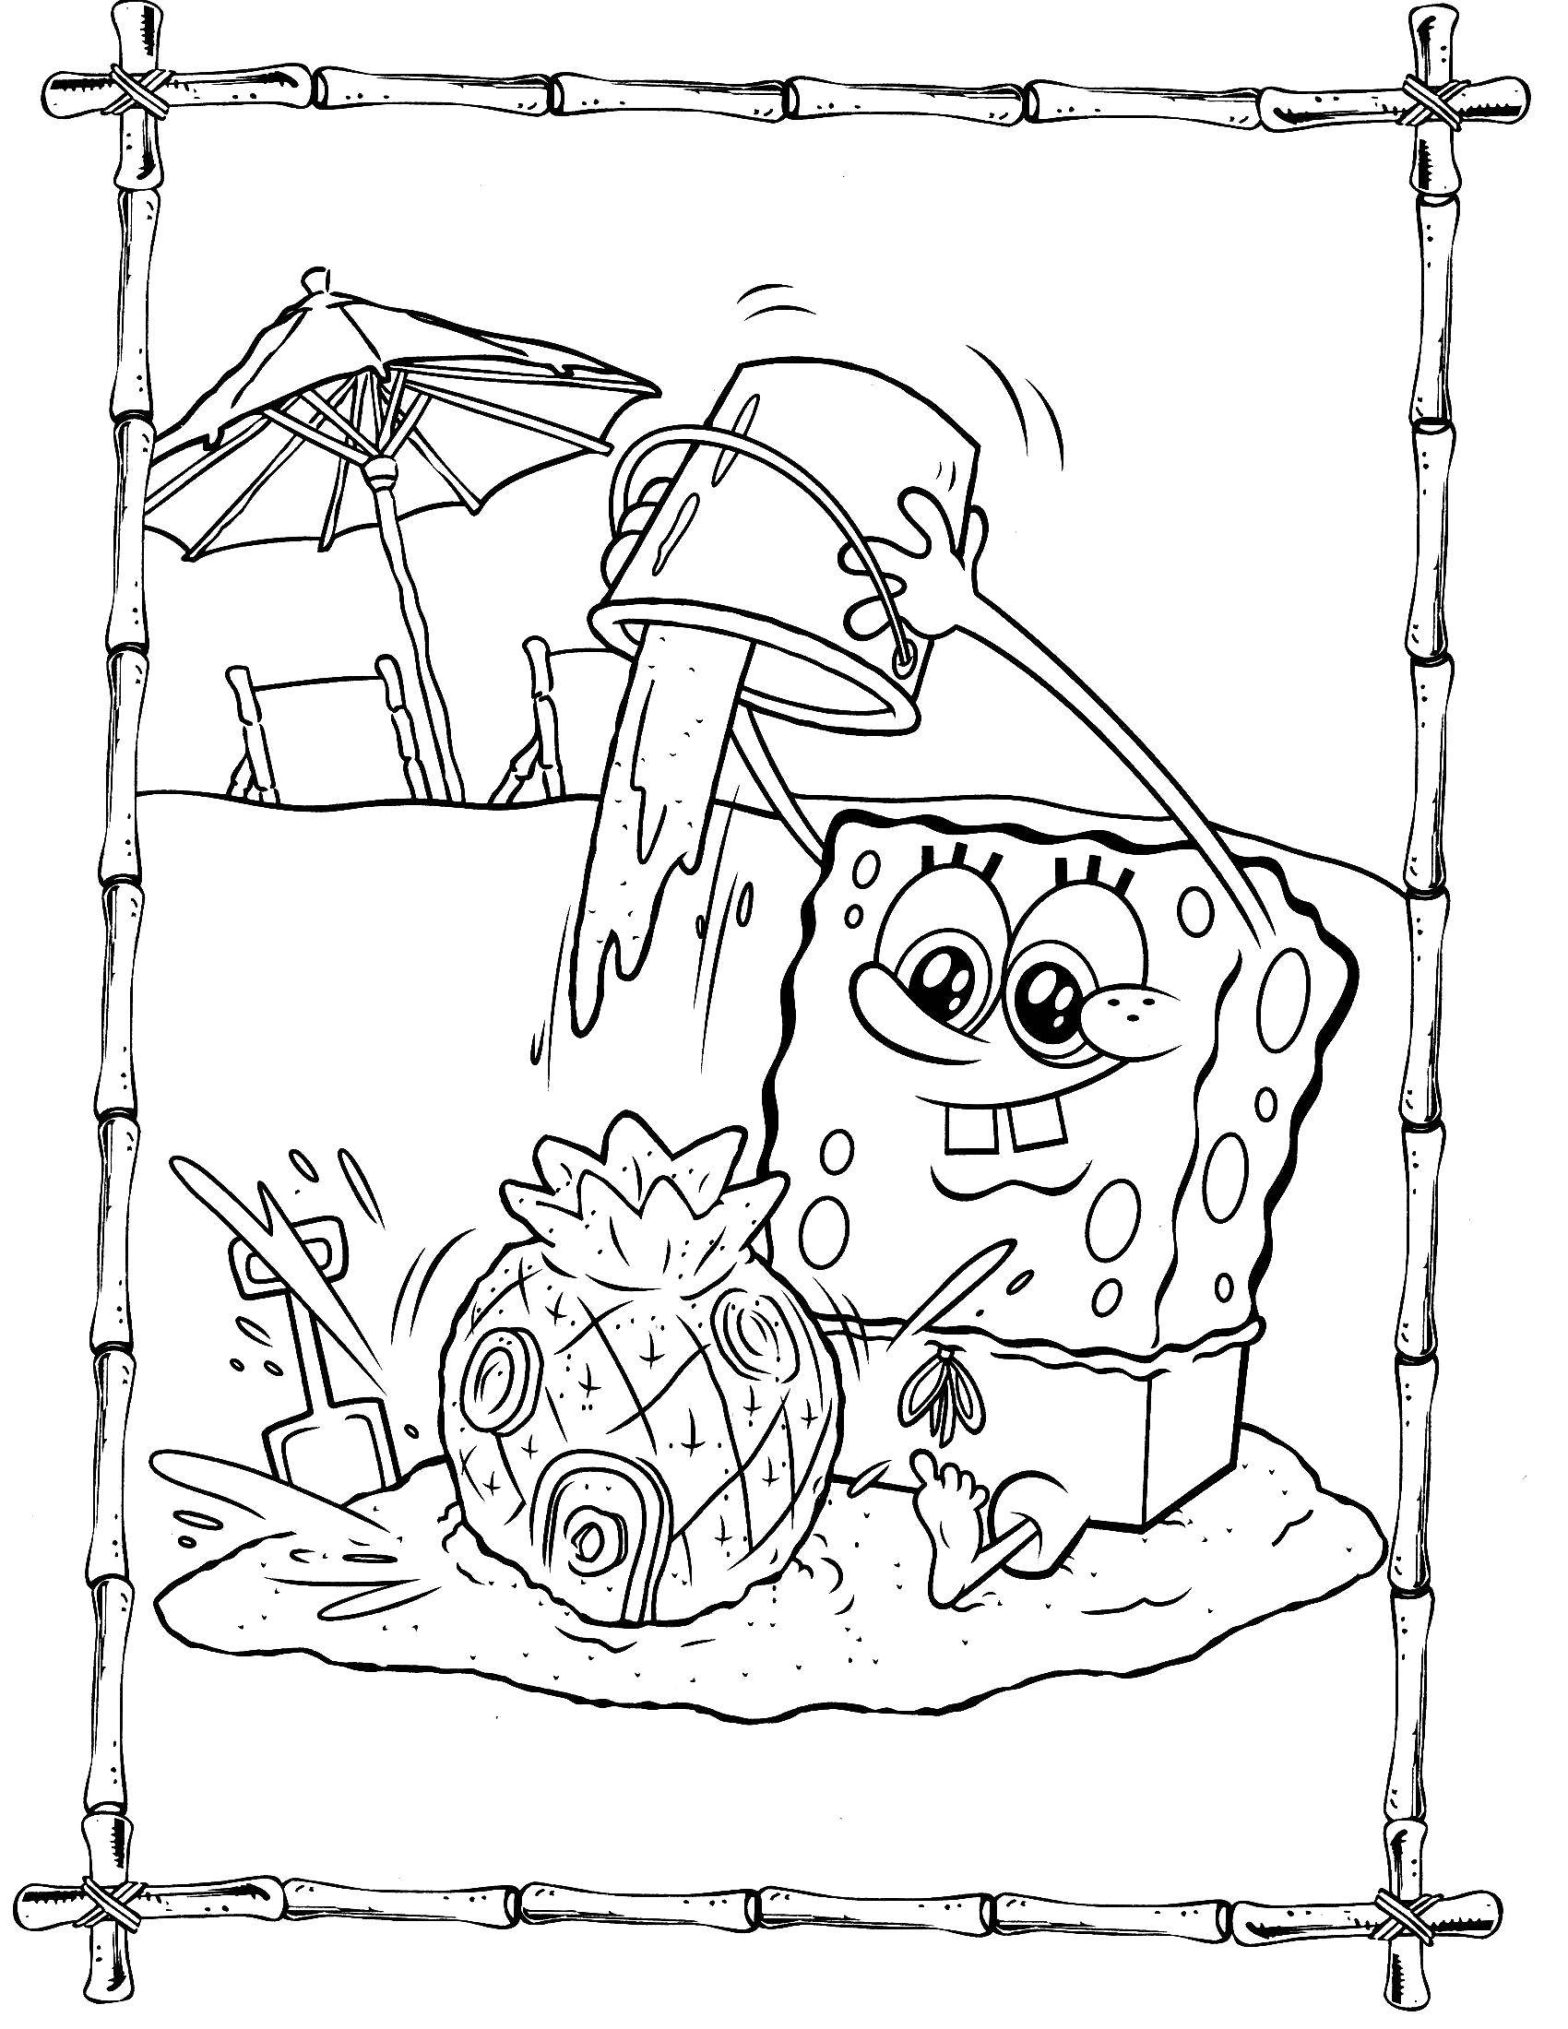 Раскраска персонажа из мультфильма Губка Боб